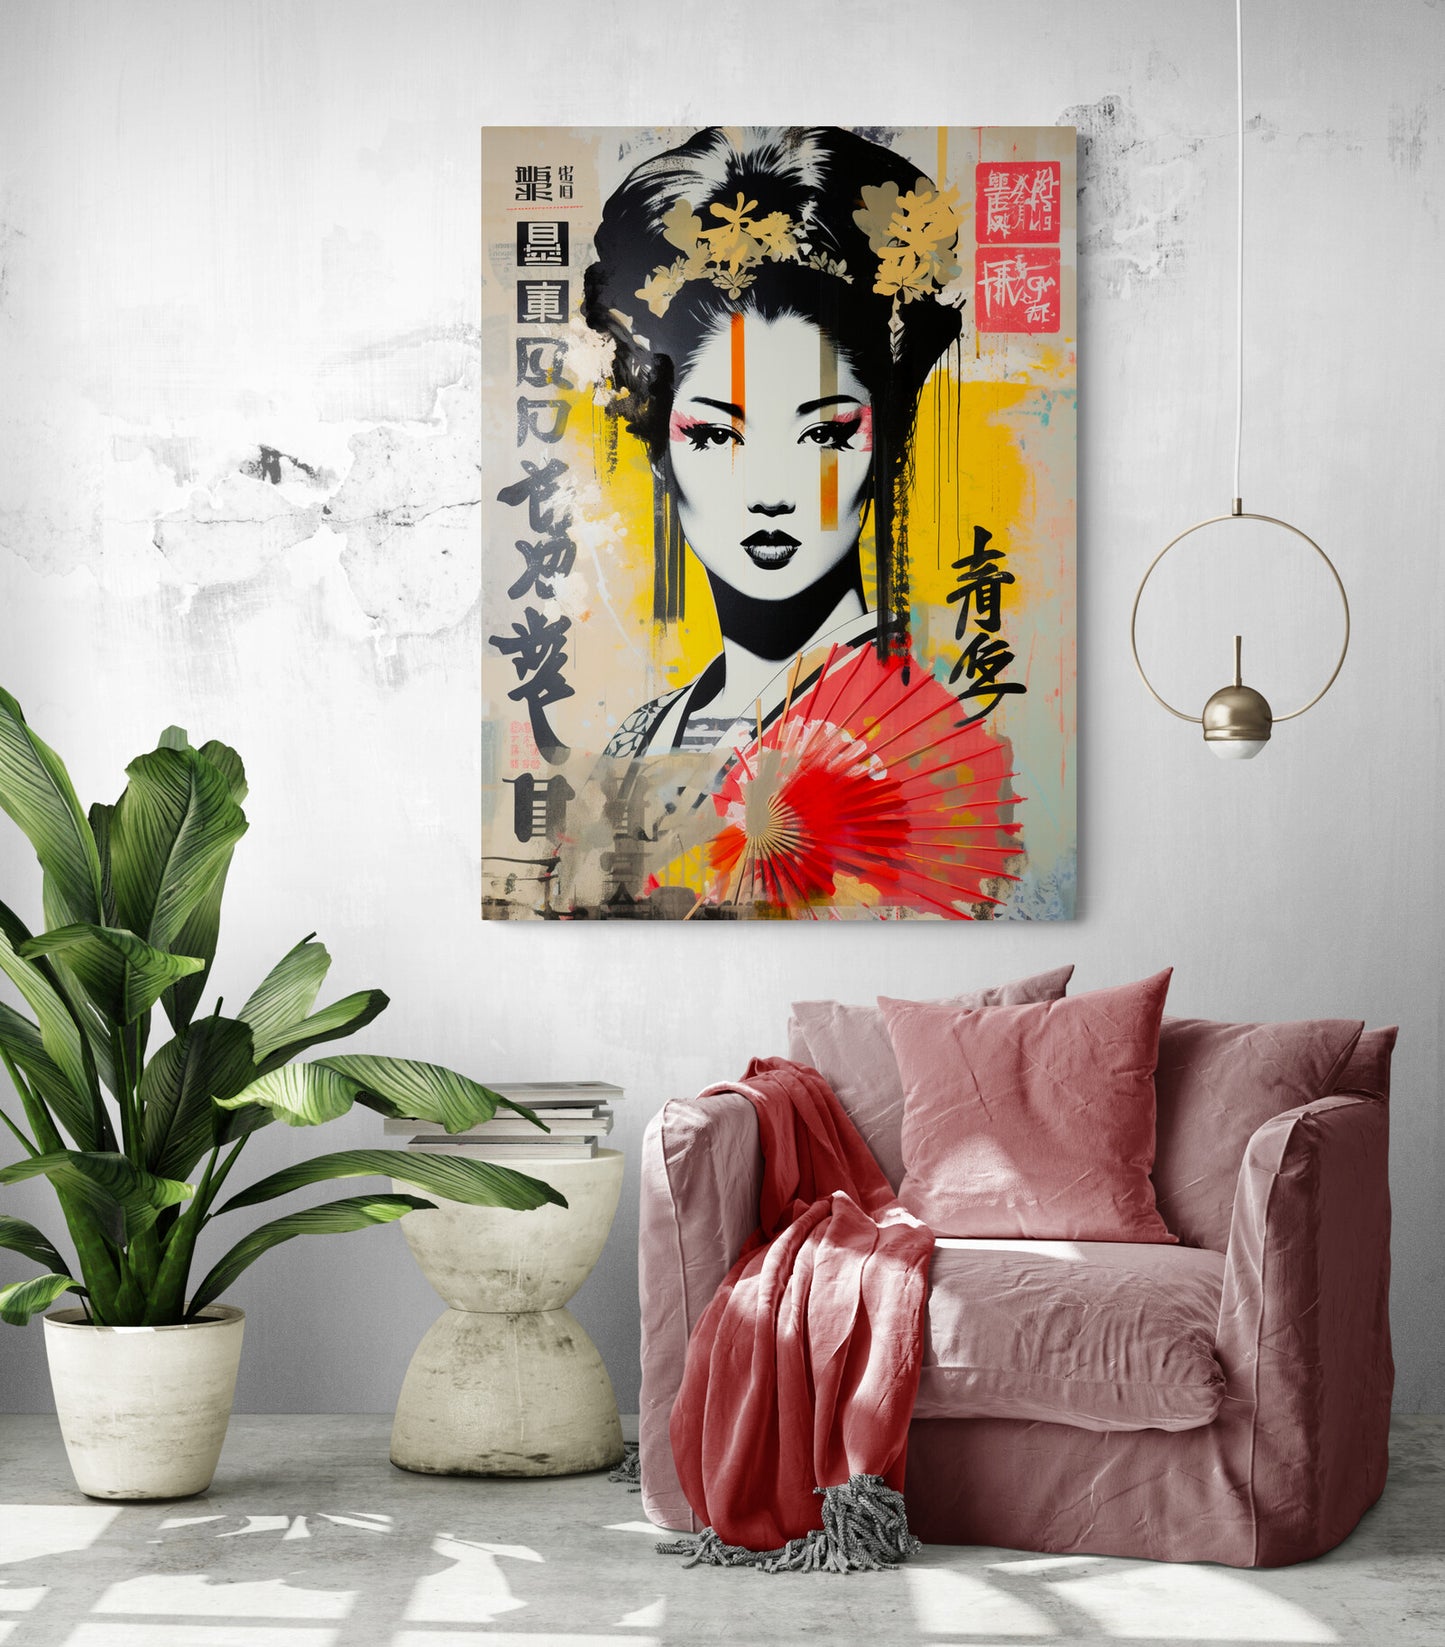 Dans un salon aux accents minimalistes, le tableau de geisha devient une pièce maîtresse captivante, apportant dynamisme et style à la décoration.